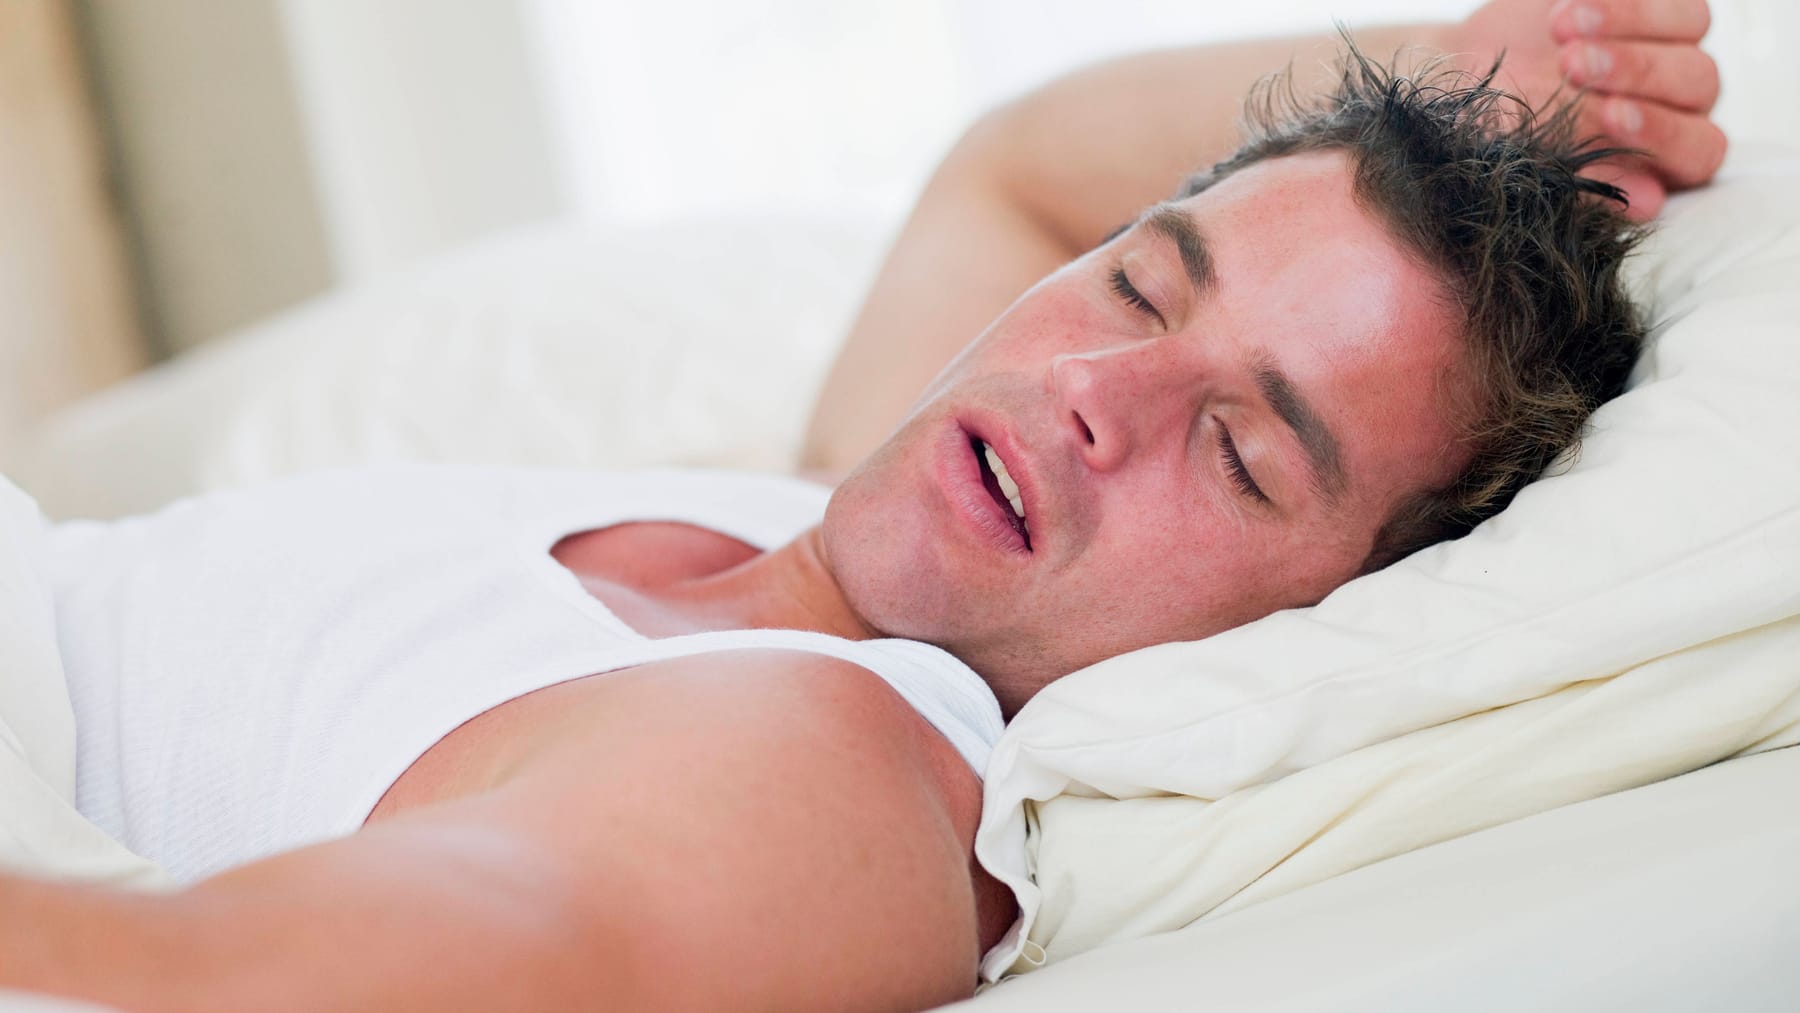 Zaburzenia snu spowodowane chrapaniem i bezdechem sennym: przyczyny i objawy